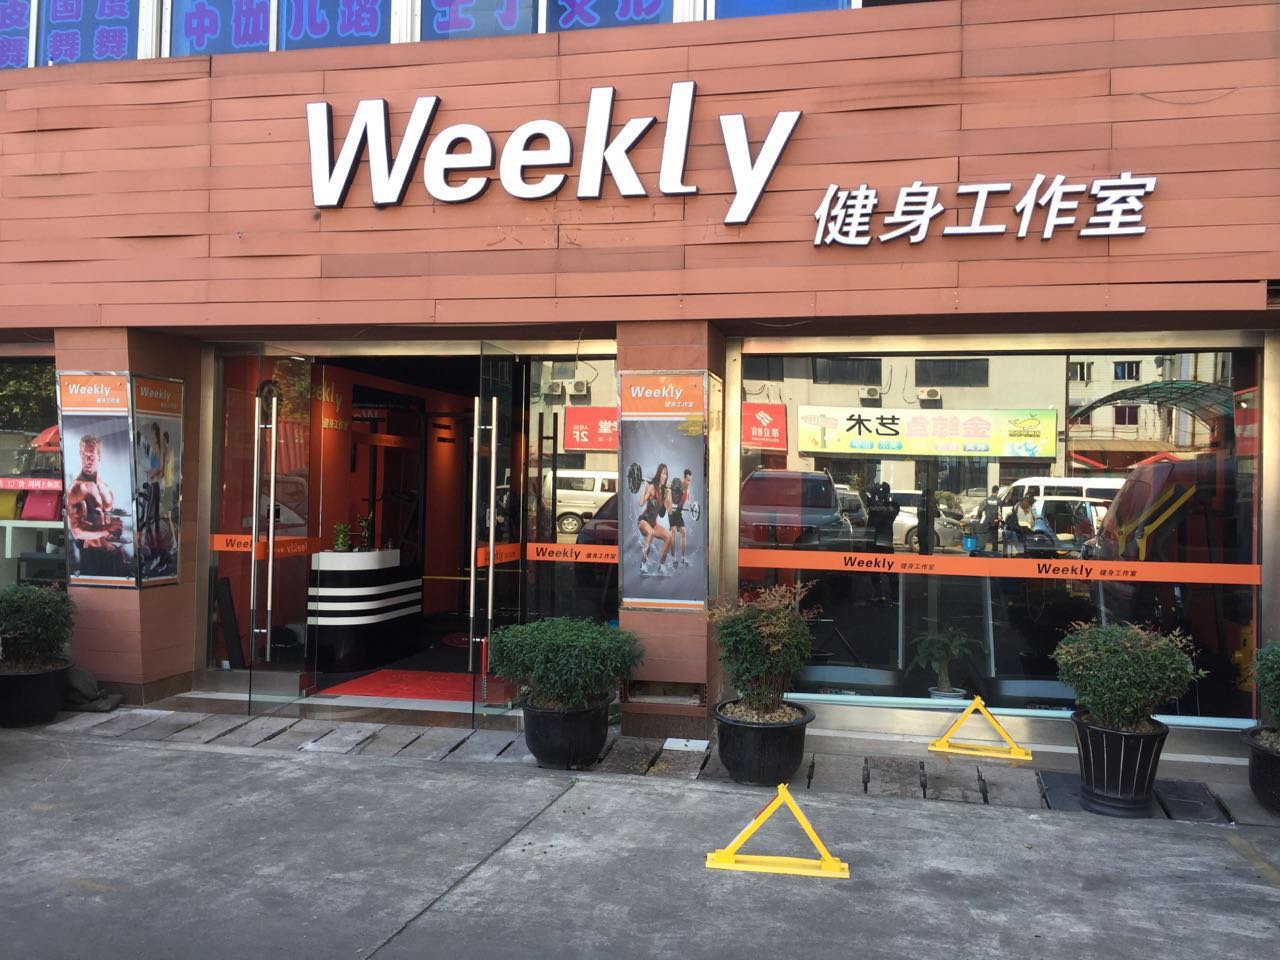 上海Weekly健身工作室预订